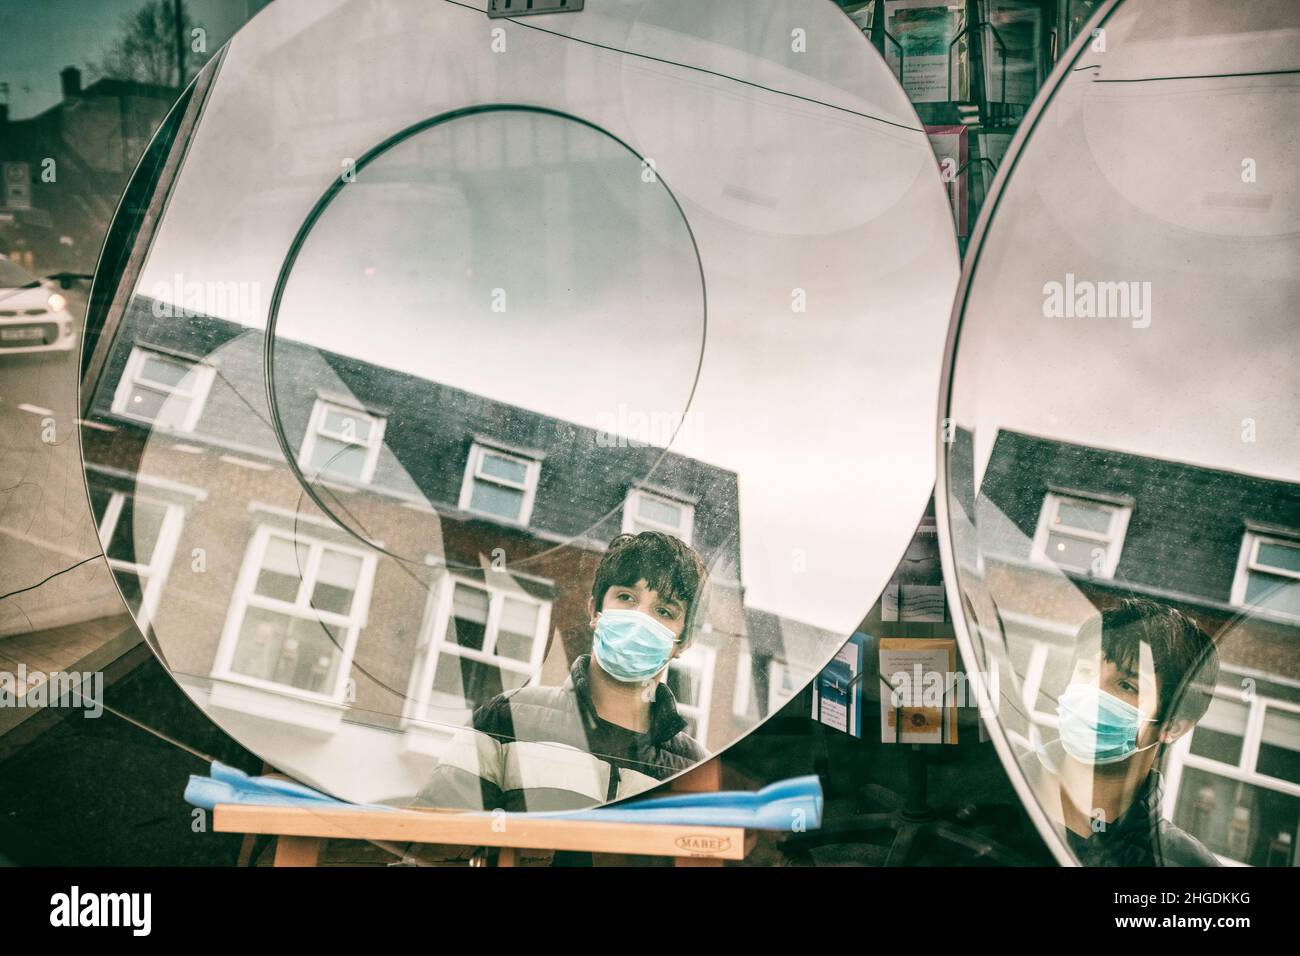 Un adolescent portant un masque facial regarde sa réflexion dans le miroir de la fenêtre du magasin, Londres, Royaume-Uni Banque D'Images